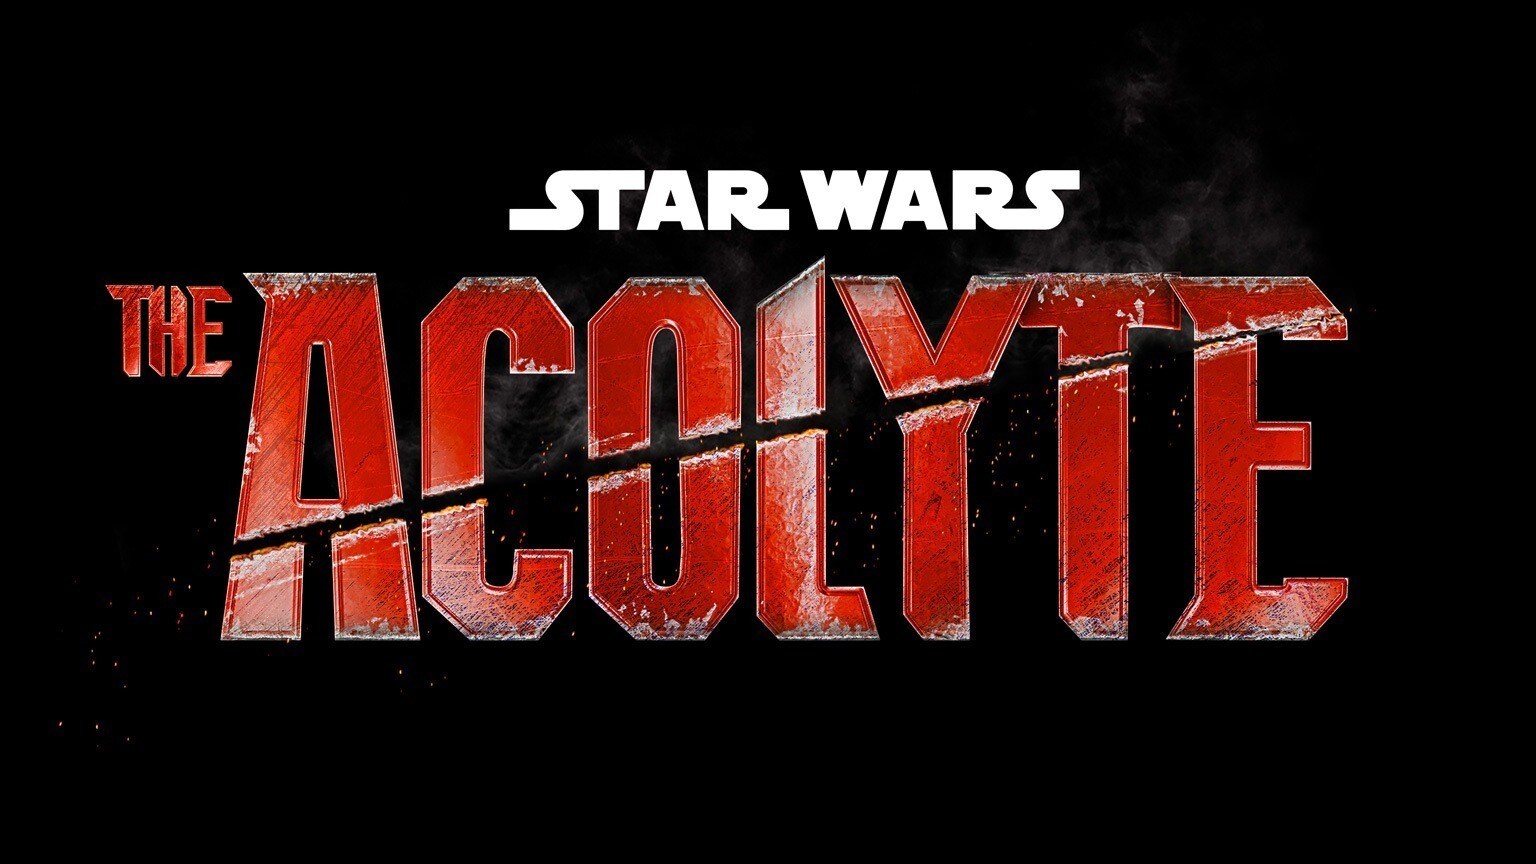 Serie Tv The Acolyte, un nuovo capitolo Star Wars